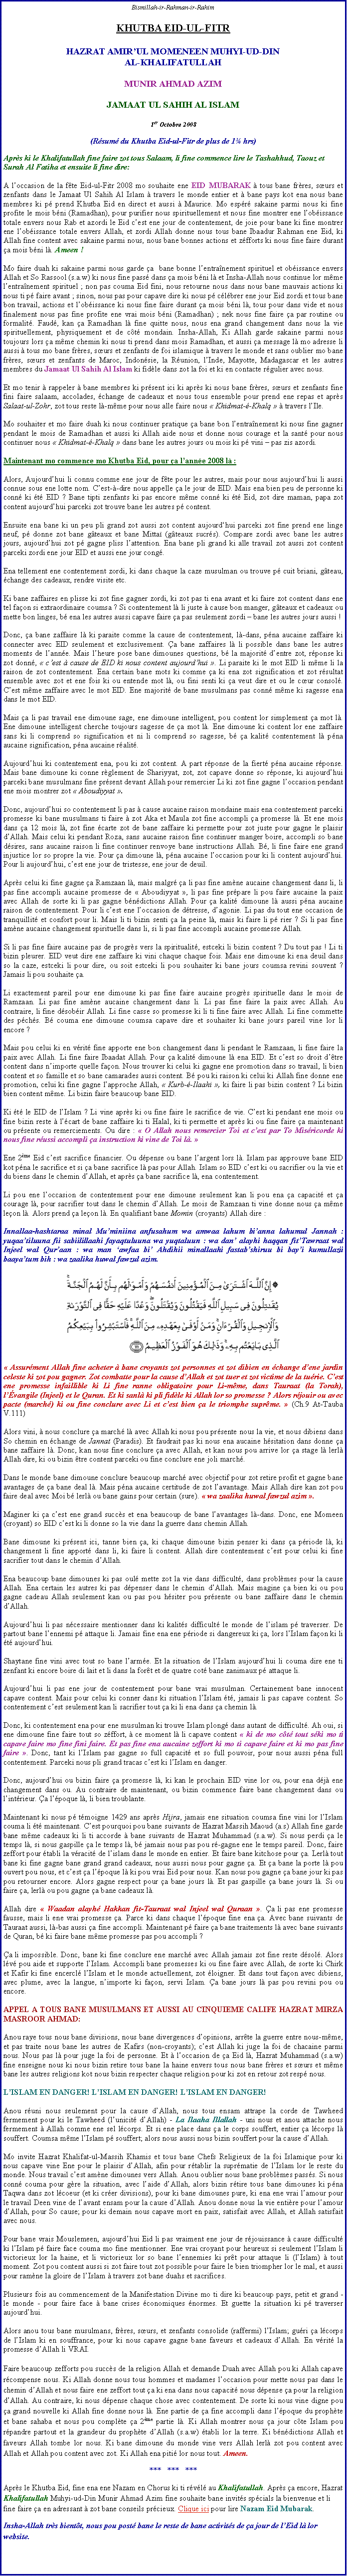 Text Box: Bismillah-ir-Rahman-ir-RahimKHUTBA EID-UL-FITR HAZRAT AMIRUL MOMENEEN MUHYI-UD-DINAL-KHALIFATULLAHMUNIR AHMAD AZIMJAMAAT UL SAHIH AL ISLAM1er Octobre 2008(Rsum du Khutba Eid-ul-Fitr de plus de 1 hrs)Aprs ki le Khalifatullah fine faire zot tous Salaam, li fine commence lire le Tashahhud, Taouz et Surah Al Fatiha et ensuite li fine dire:A loccasion de la fte Eid-ul-Fitr 2008 mo souhaite ene EID MUBARAK  tous bane frres, surs et zenfants dans le Jamaat Ul Sahih Al Islam  travers le monde entier et  bane pays kot ena nous bane membres ki p prend Khutba Eid en direct et aussi  Maurice. Mo espr sakaine parmi nous ki fine profite le mois bni (Ramadhan), pour purifier nous spirituellement et nous fine montrer ene lobissance totale envers nous Rab et azordi le Eid cest ene jour de contentement, de joie pour bane ki fine montrer ene lobissance totale envers Allah, et zordi Allah donne nous tous bane Ibaadur Rahman ene Eid, ki Allah fine content avec sakaine parmi nous, nous bane bonnes actions et zfforts ki nous fine faire durant a mois bni l. Ameen !Mo faire duah ki sakaine parmi nous garde a  bane bonne lentranement spirituel et obissance envers Allah et So Rassool (s.a.w) ki nous fine pass dans a mois bni l et Insha-Allah nous continue lor mme lentranement spirituel ; non pas couma Eid fini, nous retourne nous dans nous bane mauvais actions ki nous ti p faire avant ; sinon, nous pas pour capave dire ki nous p clbrer ene jour Eid zordi et tous bane bon travail, actions et lobissance ki nous fine faire durant a mois bni l, tous pour dans vide et nous finalement nous pas fine profite ene vrai mois bni (Ramadhan) ; nek nous fine faire a par routine ou formalit. Faud, kan a Ramadhan l fine quitte nous, nous ena grand changement dans nous la vie spirituellement, physiquement et de ct mondain. Insha-Allah, Ki Allah garde sakaine parmi nous toujours lors a mme chemin ki nous ti prend dans mois Ramadhan, et aussi a message l mo adresse li aussi  tous mo bane frres, surs et zenfants de foi islamique  travers le monde et sans oublier mo bane frres, surs et zenfants de Maroc, Indonsie, la Runion, lInde, Mayotte, Madagascar et les autres membres du Jamaat Ul Sahih Al Islam ki fidle dans zot la foi et ki en contacte rgulier avec nous.Et mo tenir  rappeler  bane membres ki prsent ici ki aprs ki nous bane frres, surs et zenfants fine fini faire salaam, accolades, change de cadeaux et nous tous ensemble pour prend ene repas et aprs Salaat-ul-Zohr, zot tous reste l-mme pour nous alle faire nous  Khidmat--Khalq   travers lIle.Mo souhaiter et mo faire duah ki nous continuer pratique a bane bon lentranement ki nous fine gagner pendant le mois de Ramadhan et aussi ki Allah aide nous et donne nous courage et la sant pour nous continuer nous  Khidmat--Khalq  dans bane les autres jours ou mois ki p vini  pas zis azordi.Maintenant mo commence mo Khutba Eid, pour a lanne 2008 l :Alors, Aujourdhui li connu comme ene jour de fte pour les autres, mais pour nous aujourdhui li aussi connue sous ene lotte nom. Cest--dire nous appelle a le jour de EID. Mais ena bien peu de personne ki conn ki t EID ? Bane tipti zenfants ki pas encore mme conn ki t Eid, zot dire maman, papa zot content aujourdhui parceki zot trouve bane les autres p content.Ensuite ena bane ki un peu pli grand zot aussi zot content aujourdhui parceki zot fine prend ene linge neuf, p donne zot bane gteaux et bane Mitta (gteaux sucrs). Compare zordi avec bane les autres jours, aujourdhui zot p gagne pliss lattention. Ena bane pli grand ki alle travail zot aussi zot content parceki zordi ene jour EID et aussi ene jour cong.Ena tellement ene contentement zordi, ki dans chaque la caze musulman ou trouve p cuit briani, gteau, change des cadeaux, rendre visite etc.Ki bane zaffaires en plisse ki zot fine gagner zordi, ki zot pas ti ena avant et ki faire zot content dans ene tel faon si extraordinaire coumsa ? Si contentement l li juste  cause bon manger, gteaux et cadeaux ou mette bon linges, b ena les autres aussi capave faire a pas seulement zordi  bane les autres jours aussi !Donc, a bane zaffaire l ki paraite comme la cause de contentement, l-dans, pna aucaine zaffaire ki connecter avec EID seulement et exclusivement. a bane zaffaires l li possible dans bane les autres moments de lanne. Mais lheure pose bane dimounes questions, b la majorit dentre zot, rponse ki zot donn,  cest  cause de EID ki nous content aujourdhui . Li paraite ki le mot EID li mme li la raison de zot contentement. Ena certain bane mots ki comme a ki ena zot signification et zot rsultat ensemble avec zot et ene fois ki ou entende mot l, ou fini senti ki a veut dire et ou le cur consol. Cest mme zaffaire avec le mot EID. Ene majorit de bane musulmans pas conn mme ki sagesse ena dans le mot EID.Mais a li pas travail ene dimoune sage, ene dimoune intelligent, pou content lor simplement a mot l. Ene dimoune intelligent cherche toujours sagesse de a mot l. Ene dimoune ki content lor ene zaffaire sans ki li comprend so signification et ni li comprend so sagesse, b a kalit contentement l pna aucaine signification, pna aucaine ralit.Aujourdhui ki contentement ena, pou ki zot content. A part rponse de la fiert pna aucaine rponse. Mais bane dimoune ki conne rglement de Shariyyat, zot, zot capave donne so rponse, ki aujourdhui parceki bane musulmans fine prsent devant Allah pour remercier Li ki zot fine gagne loccasion pendant ene mois montrer zot  Aboudiyyat .Donc, aujourdhui so contentement li pas  cause aucaine raison mondaine mais ena contentement parceki promesse ki bane musulmans ti faire  zot Aka et Maula zot fine accompli a promesse l. Et ene mois dans a 12 mois l, zot fine carte zot de bane zaffaire ki permette pour zot juste pour gagne le plaisir dAllah. Mais celui ki pendant Roza, sans aucaine raison fine continuer manger boire, accompli so bane dsires, sans aucaine raison li fine continuer renvoye bane instructions Allah. B, li fine faire ene grand injustice lor so propre la vie. Pour a dimoune l, pna aucaine loccasion pour ki li content aujourdhui. Pour li aujourdhui, cest ene jour de tristesse, ene jour de deuil.Aprs celui ki fine gagne a Ramzaan l, mais malgr a li pas fine amne aucaine changement dans li, li pas fine accompli aucaine promesse de  Aboudiyyat , li pas fine prpare li pou faire aucaine la paix avec Allah de sorte ki li pas gagne bndictions Allah. Pour a kalit dimoune l aussi pna aucaine raison de contentement. Pour li cest ene loccasion de dtresse, dagonie. Li pas du tout ene occasion de tranquillit et confort pour li. Mais li ti bizin senti a la peine l, mais ki faire li p rier ? Si li pas fine amne aucaine changement spirituelle dans li, si li pas fine accompli aucaine promesse Allah.Si li pas fine faire aucaine pas de progrs vers la spiritualit, estceki li bizin content ? Du tout pas ! Li ti bizin pleurer. EID veut dire ene zaffaire ki vini chaque chaque fois. Mais ene dimoune ki ena deuil dans so la caze, estceki li pour dire, ou soit estceki li pou souhaiter ki bane jours coumsa revini souvent ? Jamais li pou souhaite a.Li exactement pareil pour ene dimoune ki pas fine faire aucaine progrs spirituelle dans le mois de Ramzaan. Li pas fine amne aucaine changement dans li. Li pas fine faire la paix avec Allah. Au contraire, li fine dsobir Allah. Li fine casse so promesse ki li ti fine faire avec Allah. Li fine commette des pchs. B couma ene dimoune coumsa capave dire et souhaiter ki bane jours pareil vine lor li encore ?Mais pou celui ki en vrit fine apporte ene bon changement dans li pendant le Ramzaan, li fine faire la paix avec Allah. Li fine faire Ibaadat Allah. Pour a kalit dimoune l ena EID. Et cest so droit dtre content dans nimporte quelle faon. Nous trouver ki celui ki gagne ene promotion dans so travail, li bien content et so famille et so bane camarades aussi content. B pou ki raison ki celui ki Allah fine donne ene promotion, celui ki fine gagne lapproche Allah,  Kurb--Ilaahi , ki faire li pas bizin content ? Li bizin bien content mme. Li bizin faire beaucoup bane EID.Ki t le EID de lIslam ? Li vine aprs ki ou fine faire le sacrifice de vie. Cest ki pendant ene mois ou fine bizin reste  lcart de bane zaffaire ki ti Halal, ki ti permette et aprs ki ou fine faire a maintenant ou prsente ou remerciements. Ou dire :  O Allah nous remercier Toi et cest par To Misricorde ki nous fine russi accompli a instruction ki vine de Toi l. Ene 2me Eid cest sacrifice financier. Ou dpense ou bane largent lors l. Islam pas approuve bane EID kot pna le sacrifice et si a bane sacrifice l pas pour Allah. Islam so EID cest ki ou sacrifier ou la vie et du biens dans le chemin dAllah, et aprs a bane sacrifice l, ena contentement.Li pou ene loccasion de contentement pour ene dimoune seulement kan li pou ena a capacit et a courage l, pour sacrifier tout dans le chemin dAllah. Le mois de Ramzaan ti vine donne nous a mme leon l. Alors prend a leon l. En qualifiant bane Momin (croyants) Allah dire : Innallaa-hashtaraa minal Muminiina anfusahum wa amwaa lahum bianna lahumul Jannah : yuqaatiluuna fii sabiilillaahi fayaqtuluuna wa yuqtaluun : wa dan alayhi haqqan fitTawraat wal Injeel wal Quraan : wa man awfaa bi Ahdihii minallaahi fastabshiruu bi bayi kumullazii baayatum bih : wa zaalika huwal fawzul azim.￼ Assurment Allah fine acheter  bane croyants zot personnes et zot dibien en change dene jardin celeste ki zot pou gagner. Zot combatte pour la cause dAllah et zot tuer et zot victime de la turie. Cest ene promesse infaillible ki Li fine ranne obligatoire pour Li-mme, dans Tauraat (la Torah), lvangile (Injeel) et le Quran. Et ki sanl ki pli fidle ki Allah lor so promesse ? Alors rjouir ou avec pacte (march) ki ou fine conclure avec Li et cest bien a le triomphe suprme.  (Ch.9 At-Tauba V.111)Alors vini,  nous conclure a march l avec Allah ki nous pou prsente nous la vie, et nous dibiens dans So chemin en change de Jannat (Paradis). Et faudrait pas ki nous ena aucaine hsitation dans donne a bane zaffaire l. Donc, kan nous fine conclure a avec Allah, et kan nous pou arrive lor a stage l lerl Allah dire, ki ou bizin tre content parceki ou fine conclure ene joli march.Dans le monde bane dimoune conclure beaucoup march avec objectif pour zot retire profit et gagne bane avantages de a bane deal l. Mais pna aucaine certitude de zot lavantage. Mais Allah dire kan zot pou faire deal avec Moi b lerl ou bane gains pour certain (sure).  wa zaalika huwal fawzul azim .Maginer ki a cest ene grand succs et ena beaucoup de bane lavantages l-dans. Donc, ene Momeen (croyant) so EID cest ki li donne so la vie dans la guerre dans chemin Allah.Bane dimoune ki prsent ici, tanne bien a, ki chaque dimoune bizin penser ki dans a priode l, ki changement li fine apport dans li, ki faire li content. Allah dire contentement cest pour celui ki fine sacrifier tout dans le chemin dAllah.Ena beaucoup bane dimounes ki pas oul mette zot la vie dans difficult, dans problmes pour la cause Allah. Ena certain les autres ki pas dpenser dans le chemin dAllah. Mais magine a bien ki ou pou gagne cadeau Allah seulement kan ou pas pou hsiter pou prsente ou bane zaffaire dans le chemin dAllah.Aujourdhui li pas ncessaire mentionner dans ki kalits difficult le monde de lislam p traverser. De partout bane lennemi p attaque li. Jamais fine ena ene priode si dangereux ki a, lors lIslam faon ki li t aujourdhui.Shaytane fine vini avec tout so bane larme. Et la situation de lIslam aujourdhui li couma dire ene ti zenfant ki encore boire di lait et li dans la fort et de quatre cot bane zanimaux p attaque li.Aujourdhui li pas ene jour de contentement pour bane vrai musulman. Certainement bane innocent capave content. Mais pour celui ki conner dans ki situation lIslam t, jamais li pas capave content. So contentement cest seulement kan li sacrifier tout a ki li ena dans a chemin l.Donc, ki contentement ena pour ene musulman ki trouve Islam plong dans autant de difficult. Ah oui, si ene dimoune fine faire tout so zffort,  ce moment l li capave content  ki de mo ct tout ski mo ti capave faire mo fine fini faire. Et pas fine ena aucaine zeffort ki mo ti capave faire et ki mo pas fine faire . Donc, tant ki lIslam pas gagne so full capacit et so full pouvoir, pour nous aussi pna full contentement. Parceki nous pli grand tracas cest ki lIslam en danger. Donc, aujourdhui ou bizin faire a promesse l, ki kan le prochain EID vine lor ou, pour ena dj ene changement dans ou. Au contraire de maintenant, ou bizin commence faire bane changement dans ou lintrieur. a lpoque l, li bien troublante.Maintenant ki nous p tmoigne 1429 ans aprs Hijra, jamais ene situation coumsa fine vini lor lIslam couma li t maintenant. Cest pourquoi pou bane suivants de Hazrat Massih Maoud (a.s) Allah fine garde bane mme cadeaux ki li ti accorde  bane suivants de Hazrat Muhammad (s.a.w). Si nous perdi a le temps l, si nous gaspille a le temps l, b jamais nous pas pou r-gagne ene le temps pareil. Donc, faire zeffort pour tabli la vracit de lislam dans le monde en entier. Et faire bane kitchose pour a. Lerl tout bane ki fine gagne bane grand grand cadeaux, nous aussi nous pour gagne a. Et a bane la porte l pou ouvert pou nous, et cest a lpoque l ki pou vrai Eid pour nous. Kan nous pou gagne a bane jour ki pas pou retourner encore. Alors gagne respect pour a bane jours l. Et pas gaspille a bane jours l. Si ou faire a, lerl ou pou gagne a bane cadeaux l.Allah dire  Waadan alayh Hakkan fit-Tauraat wal Injeel wal Quraan . a li pas ene promesse fausse, mais li ene vrai promesse a. Parce ki dans chaque lpoque fine ena a. Avec bane suivants de Tauraat aussi, l-bas aussi a fine accompli. Maintenant p faire a bane traitements l avec bane suivants de Quran, b ki faire bane mme promesse pas pou accompli ?a li impossible. Donc, bane ki fine conclure ene march avec Allah jamais zot fine reste dsol. Alors lv pou aide et supporte lIslam. Accompli bane promesses ki ou fine faire avec Allah, de sorte ki Chirk et Kafir ki fine encercl lIslam et le monde actuellement, zot loigner. Et dans tout faon avec dibiens, avec plume, avec la langue, nimporte ki faon, servi Islam. a bane jours l pas pou revini pou ou encore. APPEL A TOUS BANE MUSULMANS ET AUSSI AU CINQUIEME CALIFE HAZRAT MIRZA MASROOR AHMAD:Anou raye tous nous bane divisions, nous bane divergences dopinions, arrte la guerre entre nous-mme, et pas traite nous bane les autres de Kafirs (non-croyants); cest Allah ki juge la foi de chacaine parmi nous. Nous pas l pour juge la foi de personne. Et  loccasion de a Eid l, Hazrat Muhammad (s.a.w) fine enseigne nous ki nous bizin retire tous bane la haine envers tous nous bane frres et surs et mme bane les autres religions kot nous bizin respecter chaque religion pour ki zot en retour zot resp nous.LISLAM EN DANGER! LISLAM EN DANGER! LISLAM EN DANGER! Anou runi nous seulement pour la cause dAllah, nous tous ensam attrape la corde de Tawheed fermement pour ki le Tawheed (lunicit dAllah) - La Ilaaha Illallah - uni nous et anou attache nous fermement  Allah comme ene sel lcorps. Et si ene place dans a le corps souffert, entier a lcorps l souffert. Coumsa mme lIslam p souffert; alors nous aussi nous bizin souffert pour la cause dAllah.Mo invite Hazrat Khalifat-ul-Massih Khamis et tous bane Chefs Religieux de la foi Islamique pour ki nous capave vine Ene pour le plaisir dAllah, afin pour rtablir la suprmatie de lIslam lor le reste du monde. Nous travail cest amne dimounes vers Allah. Anou oublier nous bane problmes passs. Si nous conn couma pour gre la situation, avec laide dAllah, alors bizin rtire tous bane dimounes ki pna Taqwa dans zot lcoeur (et ki crer divisions), pour ki bane dimounes pure, ki ena ene vrai lamour pour le travail Deen vine de lavant ensam pour la cause dAllah. Anou donne nous la vie entire pour lamour dAllah, pour So cause; pour ki demain nous capave mort en paix, satisfait avec Allah, et Allah satisfait avec nous.Pour bane vrais Mouslemeen, aujourdhui Eid li pas vraiment ene jour de rjouissance  cause difficult ki lIslam p faire face couma mo fine mentionner. Ene vrai croyant pour heureux si seulement lIslam li victorieux lor la haine, et li victorieux lor so bane lennemies ki prt pour attaque li (lIslam)  tout moment. Zot pou content aussi si zot faire tout zot possible pour faire le bien triompher lor le mal, et aussi pour ramne la gloire de lIslam  travers zot bane duahs et sacrifices.Plusieurs fois au commencement de la Manifestation Divine mo ti dire ki beaucoup pays, petit et grand - le monde - pour faire face  bane crises conomiques normes. Et guette la situation ki p traverser aujourdhui.Alors anou tous bane musulmans, frres, surs, et zenfants consolide (raffermi) lIslam; guri a lcorps de lIslam ki en souffrance, pour ki nous capave gagne bane faveurs et cadeaux dAllah. En vrit la promesse dAllah li VRAI.Faire beaucoup zefforts pou succs de la religion Allah et demande Duah avec Allah pou ki Allah capave rcompense nous. Ki Allah donne nous tous hommes et madames loccasion pour mette nous pas dans le chemin dAllah et nous faire ene zeffort tout a ki ena dans nous capacit nous dpense a pour la religion dAllah. Au contraire, ki nous dpense chaque chose avec contentement. De sorte ki nous vine digne pou a grand nouvelle ki Allah fine donne nous l. Ene partie de a fine accompli dans lpoque du prophte et bane sahaba et nous pou complte a 2me partie l. Ki Allah montrer nous a jour cte Islam pou rpandre partout et la grandeur du prophte dAllah (s.a.w) tabli lor la terre. Ki bndictions Allah et faveurs Allah tombe lor nous. Ki bane dimoune du monde vine vers Allah lerl zot pou content avec Allah et Allah pou content avec zot. Ki Allah ena piti lor nous tout. Ameen.***   ***   ***Aprs le Khutba Eid, fine ena ene Nazam en Chorus ki ti rvl au Khalifatullah. Aprs a encore, Hazrat Khalifatullah Muhyi-ud-Din Munir Ahmad Azim fine souhaite bane invits spcials la bienvenue et li fine faire a en adressant  zot bane conseils prcieux. Clique ici pour lire Nazam Eid Mubarak.Insha-Allah trs bientt, nous pou post bane le reste de bane activits de a jour de lEid l lor website.